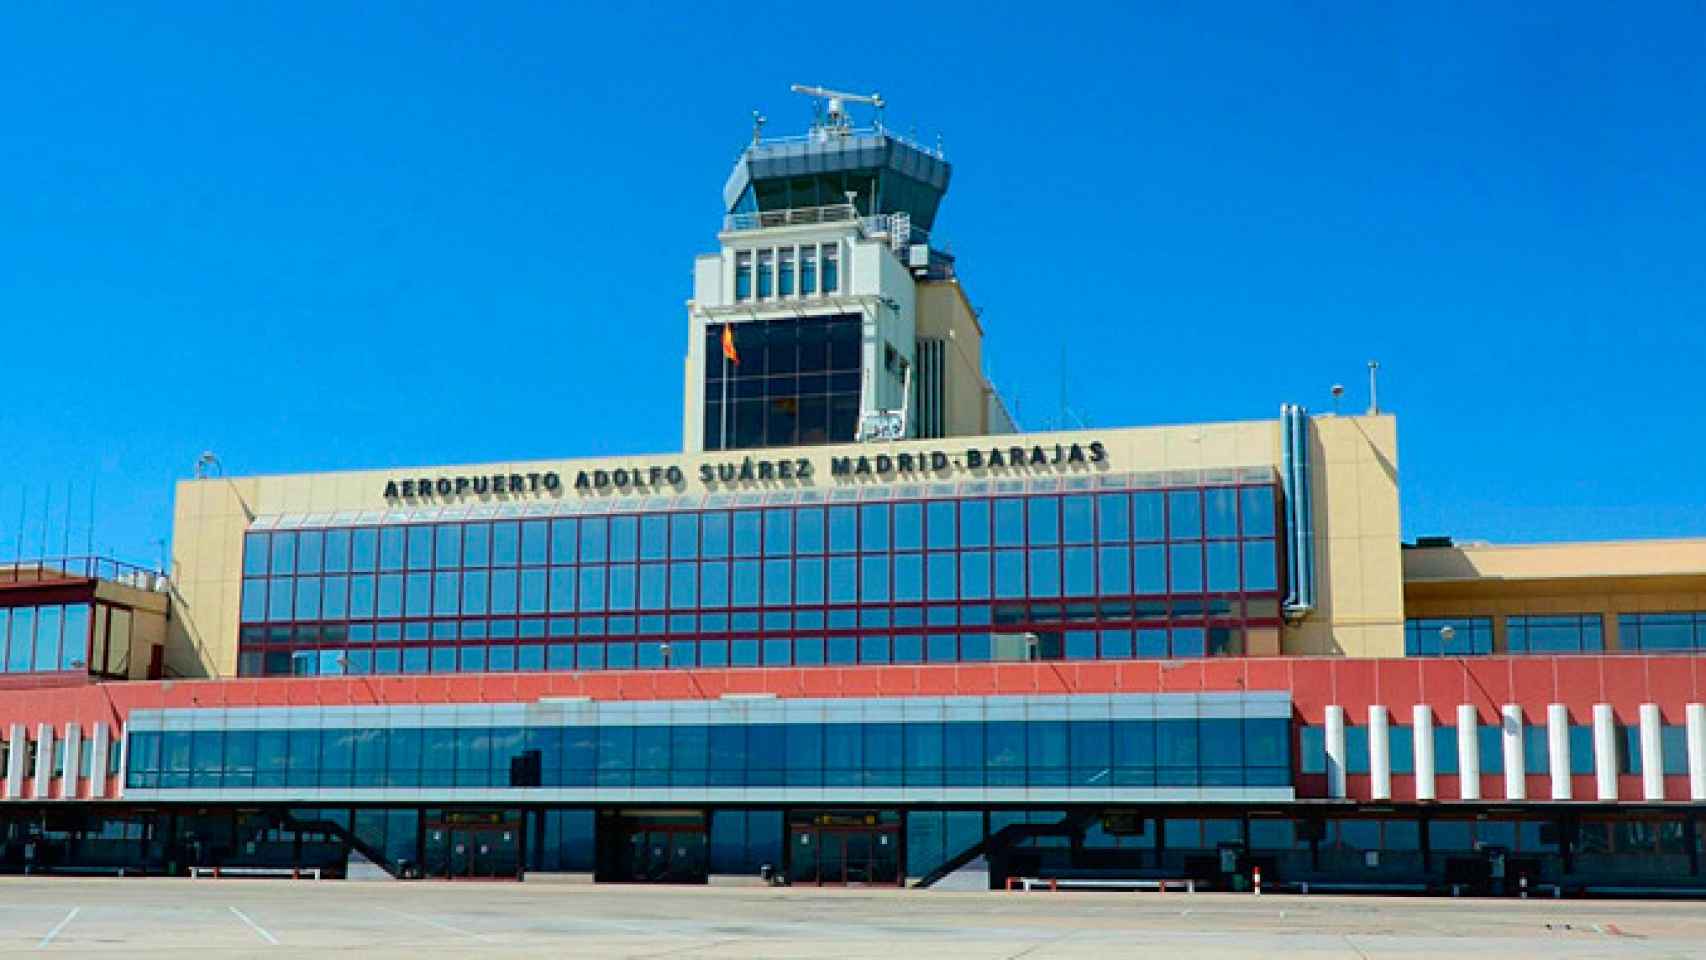 La sede de Tag Aviation España Imagen está en el Aeropuerto Adolfo Suárez Madrid-Barajas